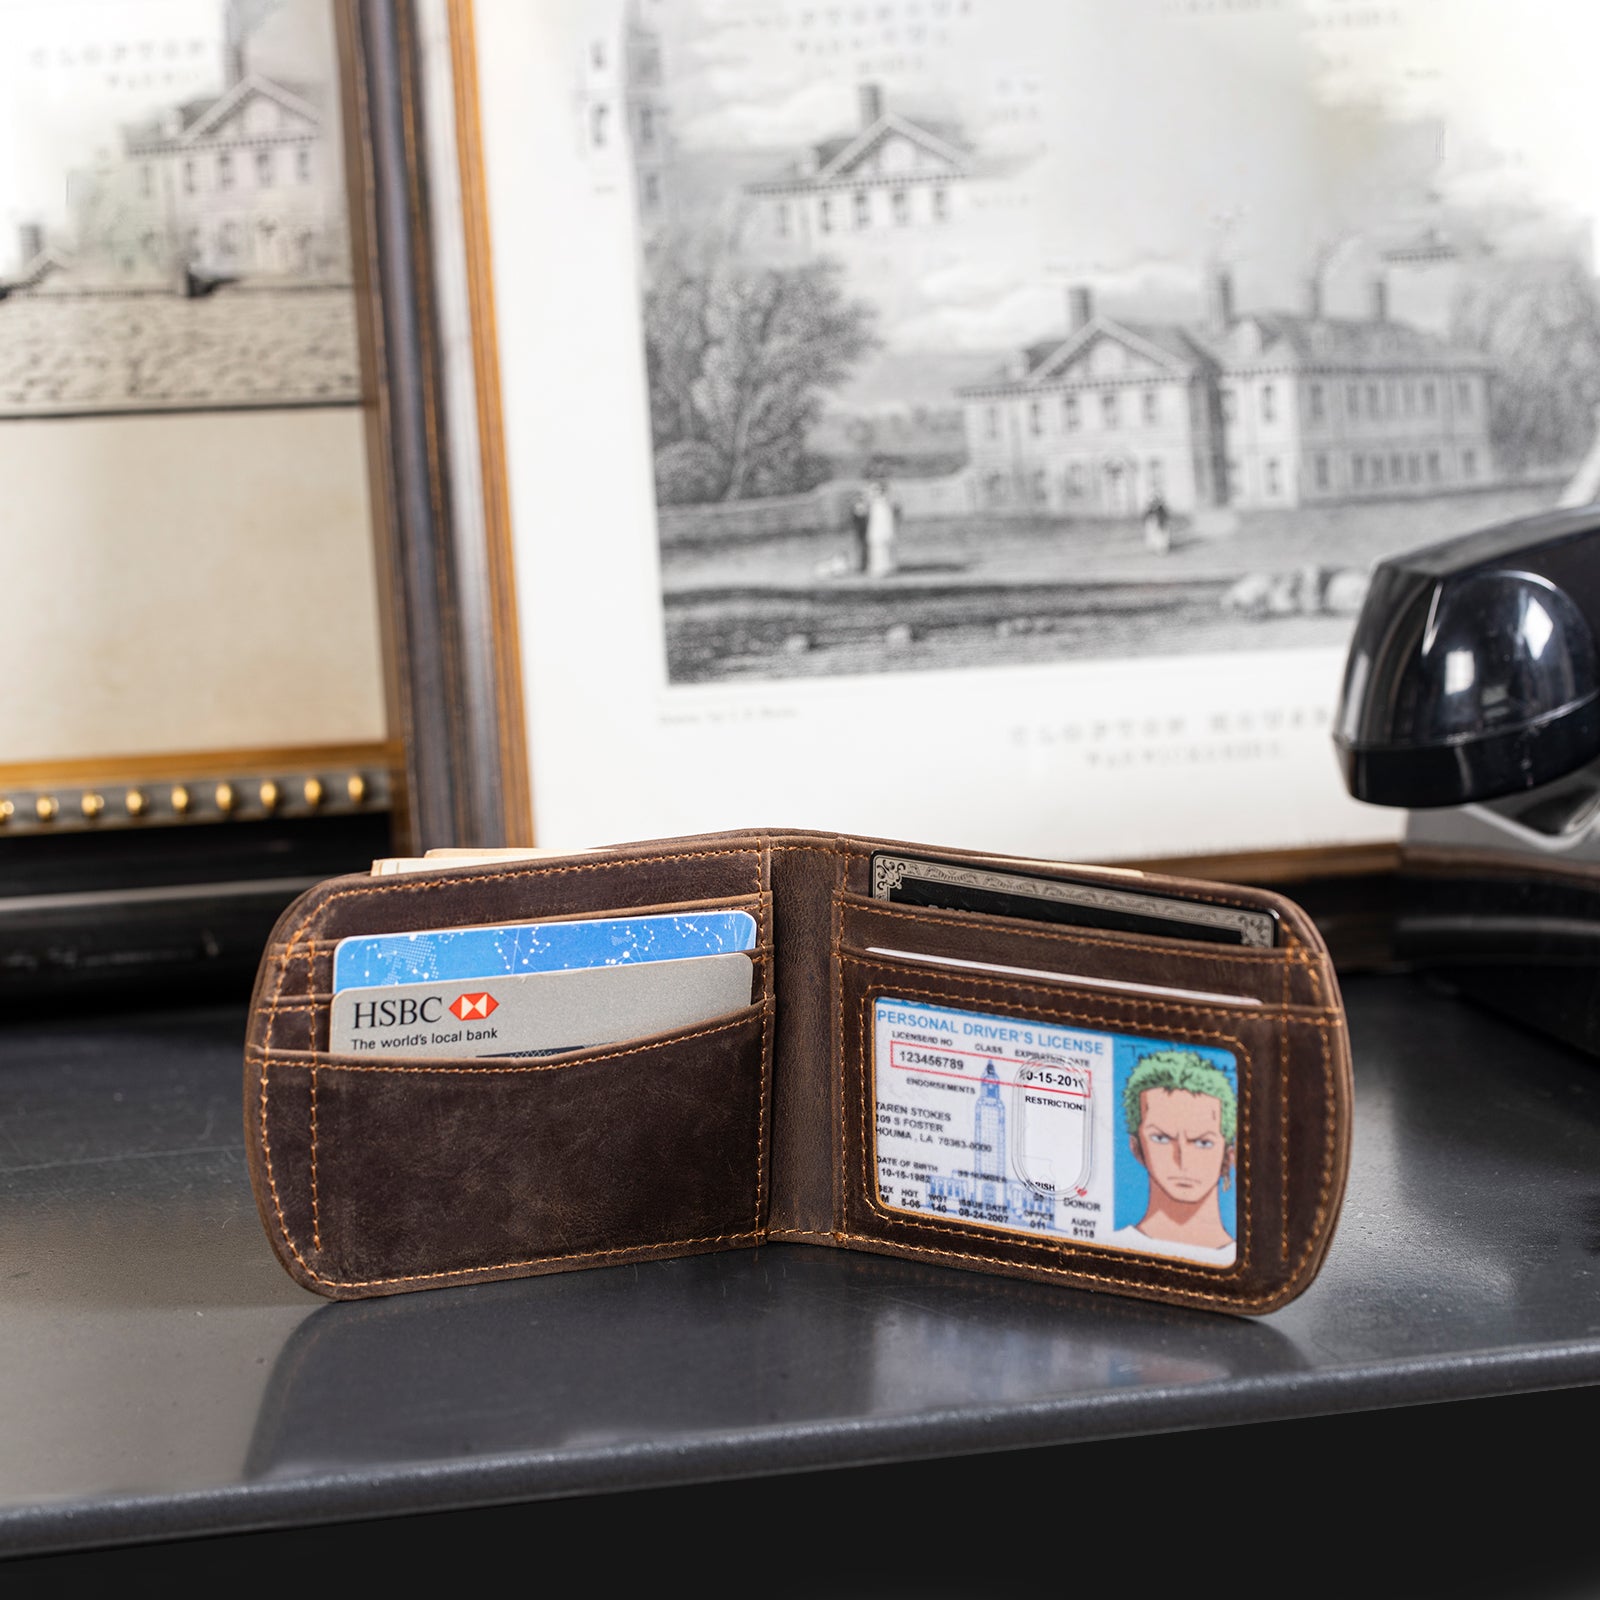 Mens Bifold Wallet, Wallets for Men, Bifold Wallet, Cowhide Leather Wallet, RFID Personalized Men's Wallet, Wallet with ID Window, Leather